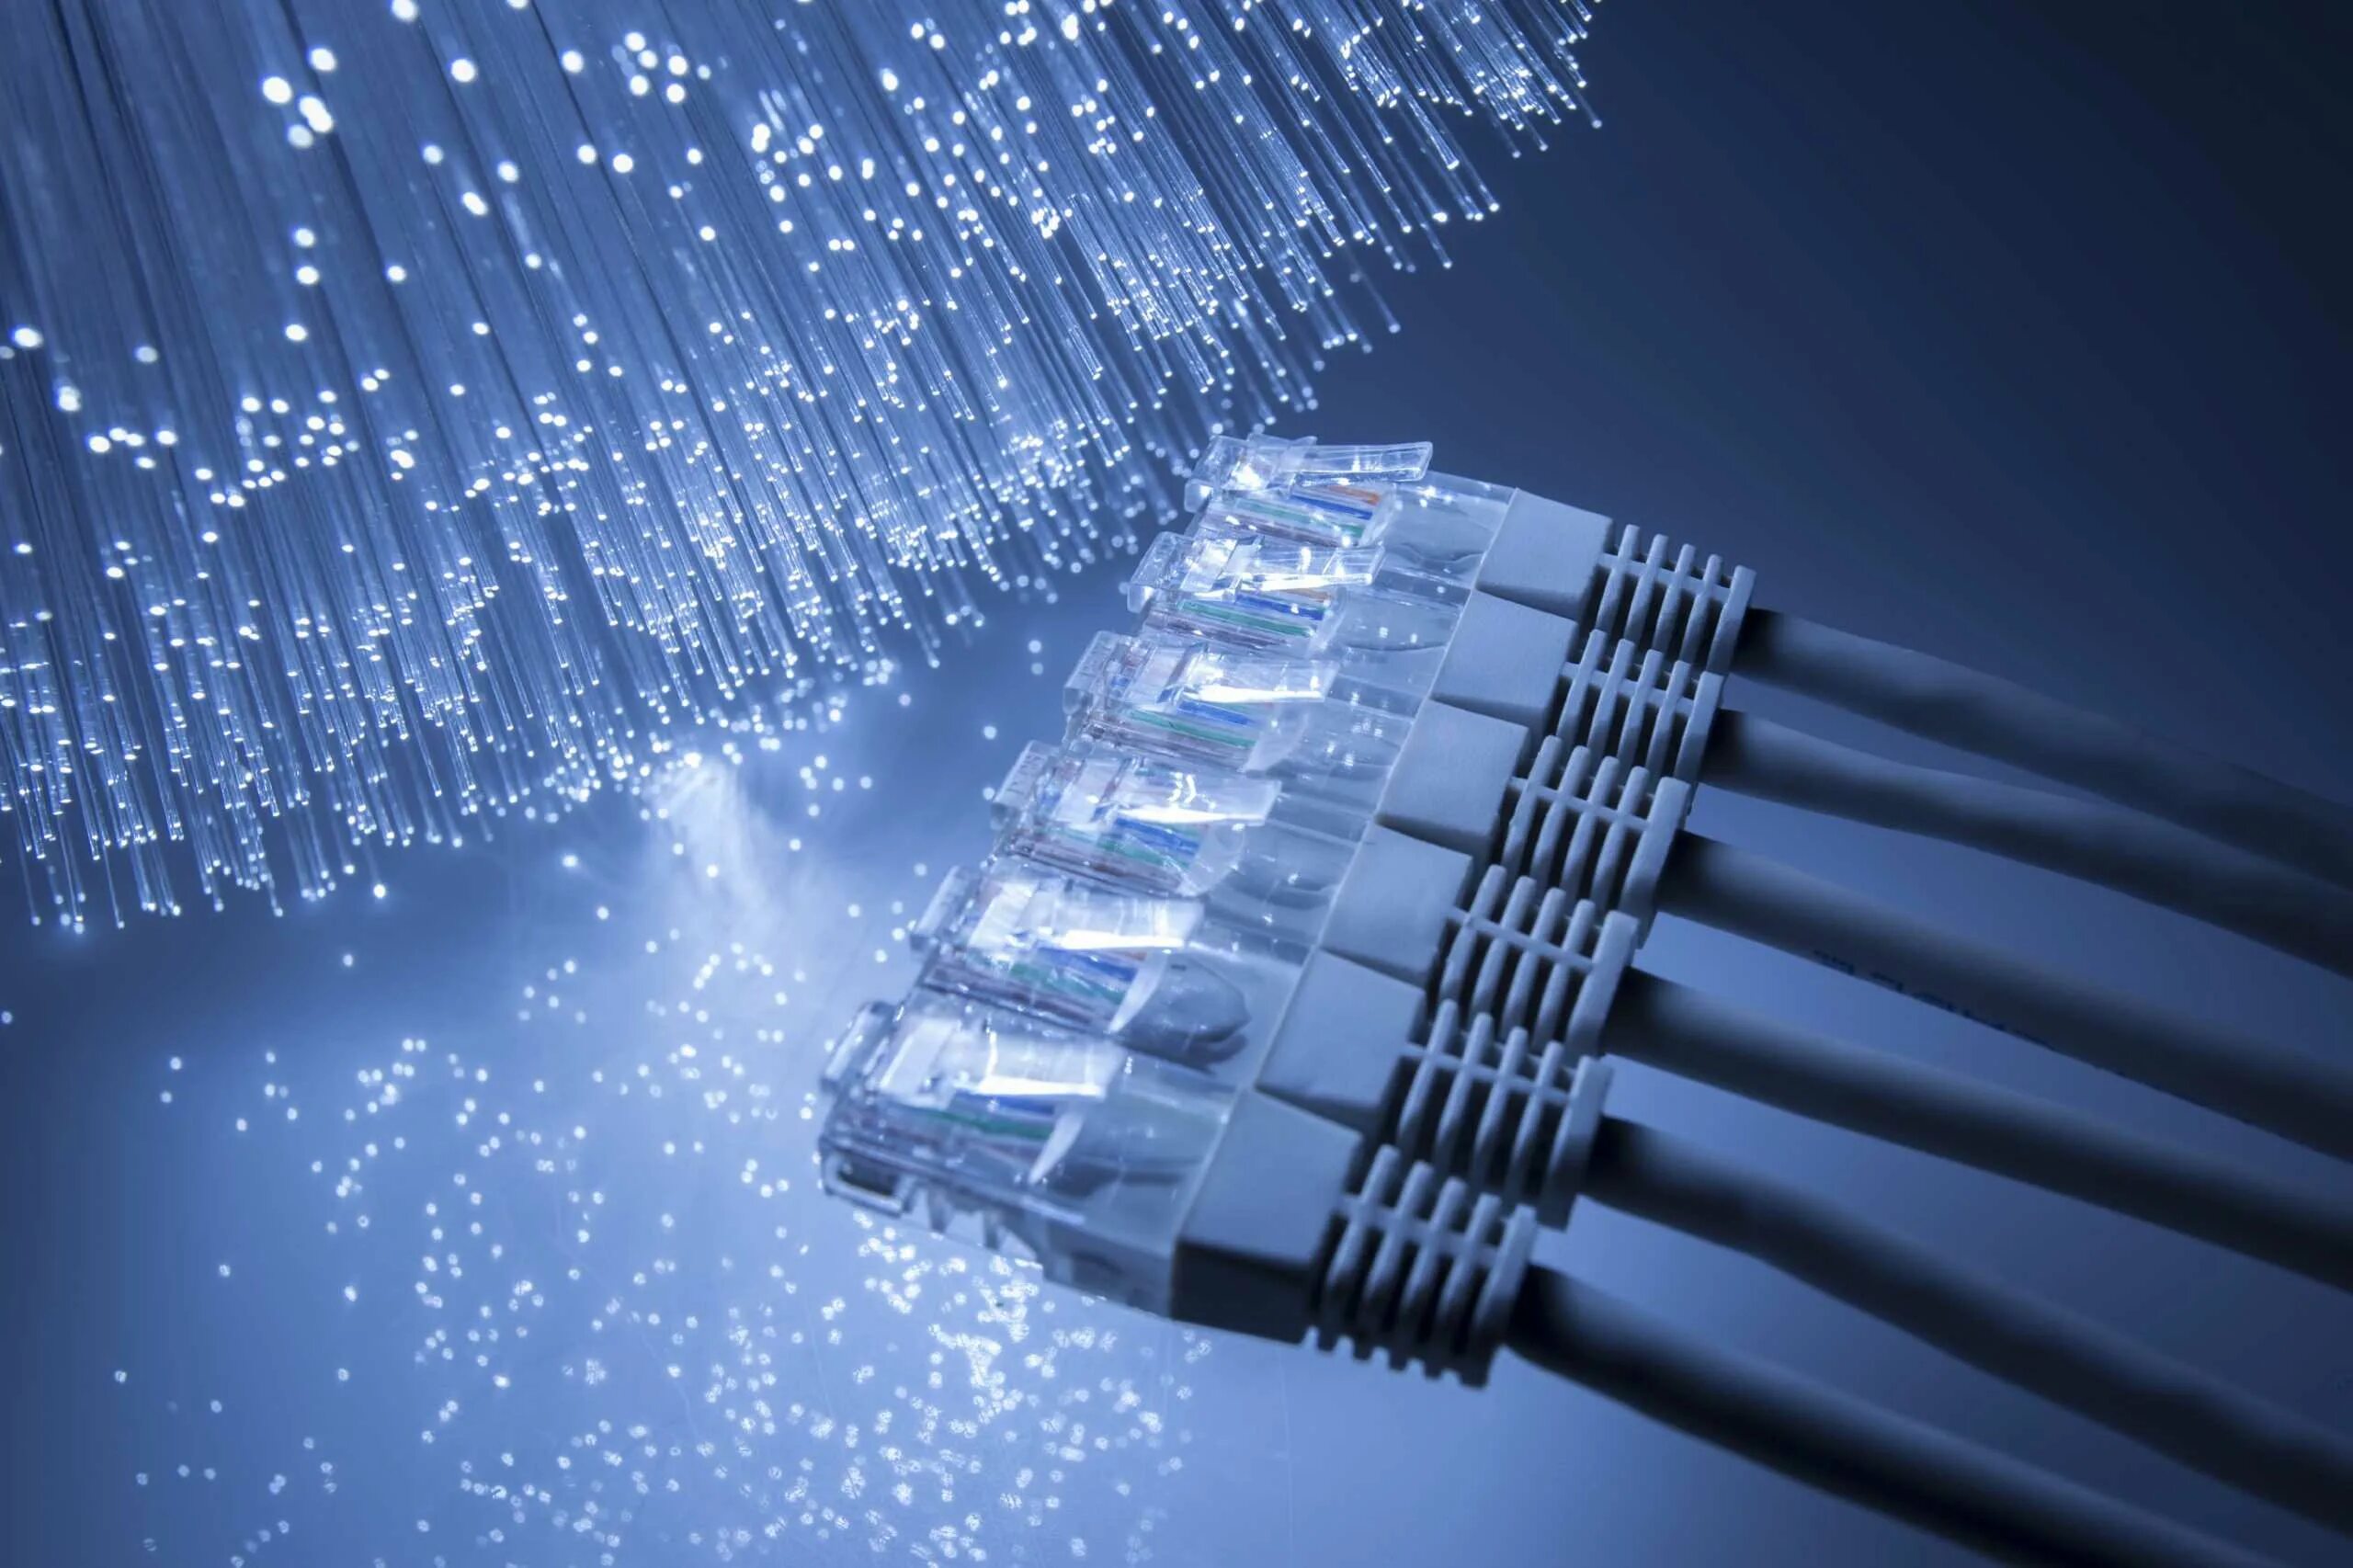 Кабельные сети интернет. Провод Ethernet ВОЛС. Оптоволокно сетевой кабель. Волоконно-оптические линии связи. Сетевое оборудование компьютерных сетей оптоволокно.